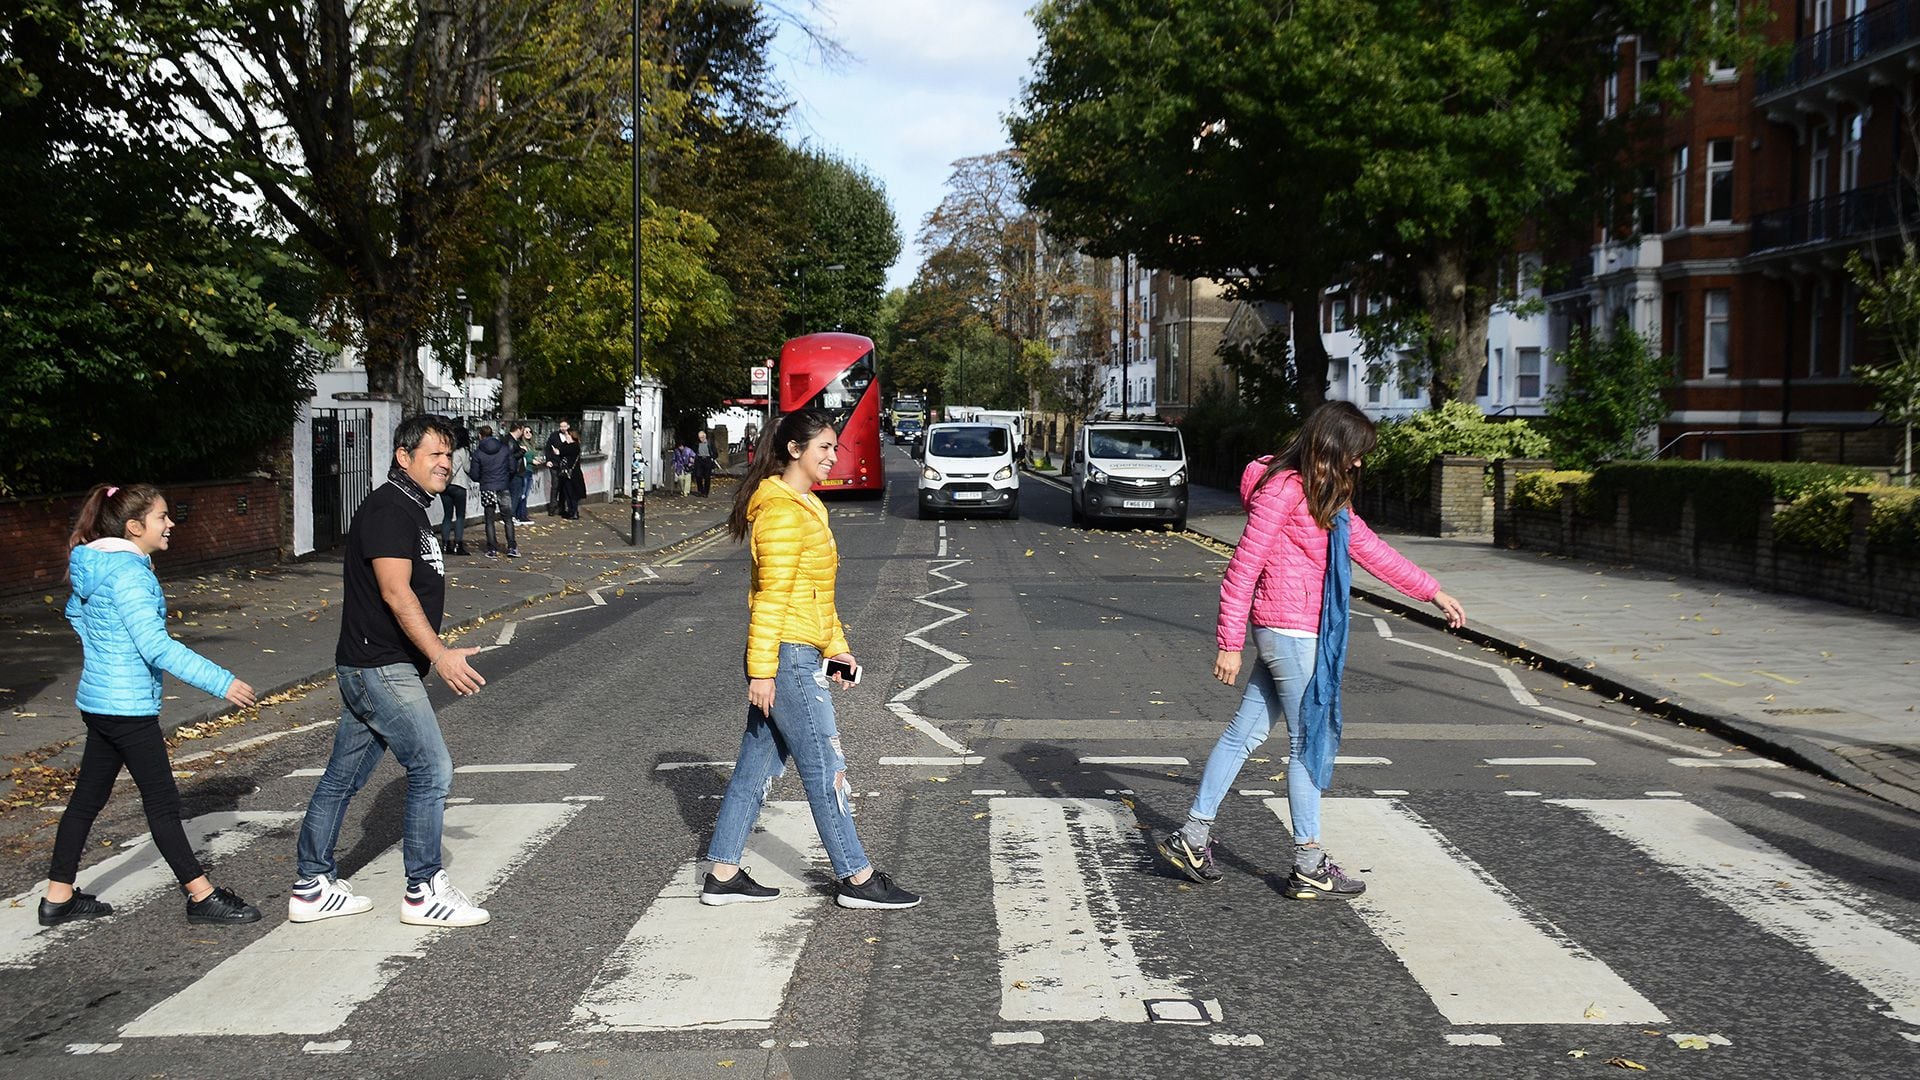 Miles de personas cada día intentan remedar la foto de portada de Abbey Road (Photo by Robert Alexander/Getty Images)